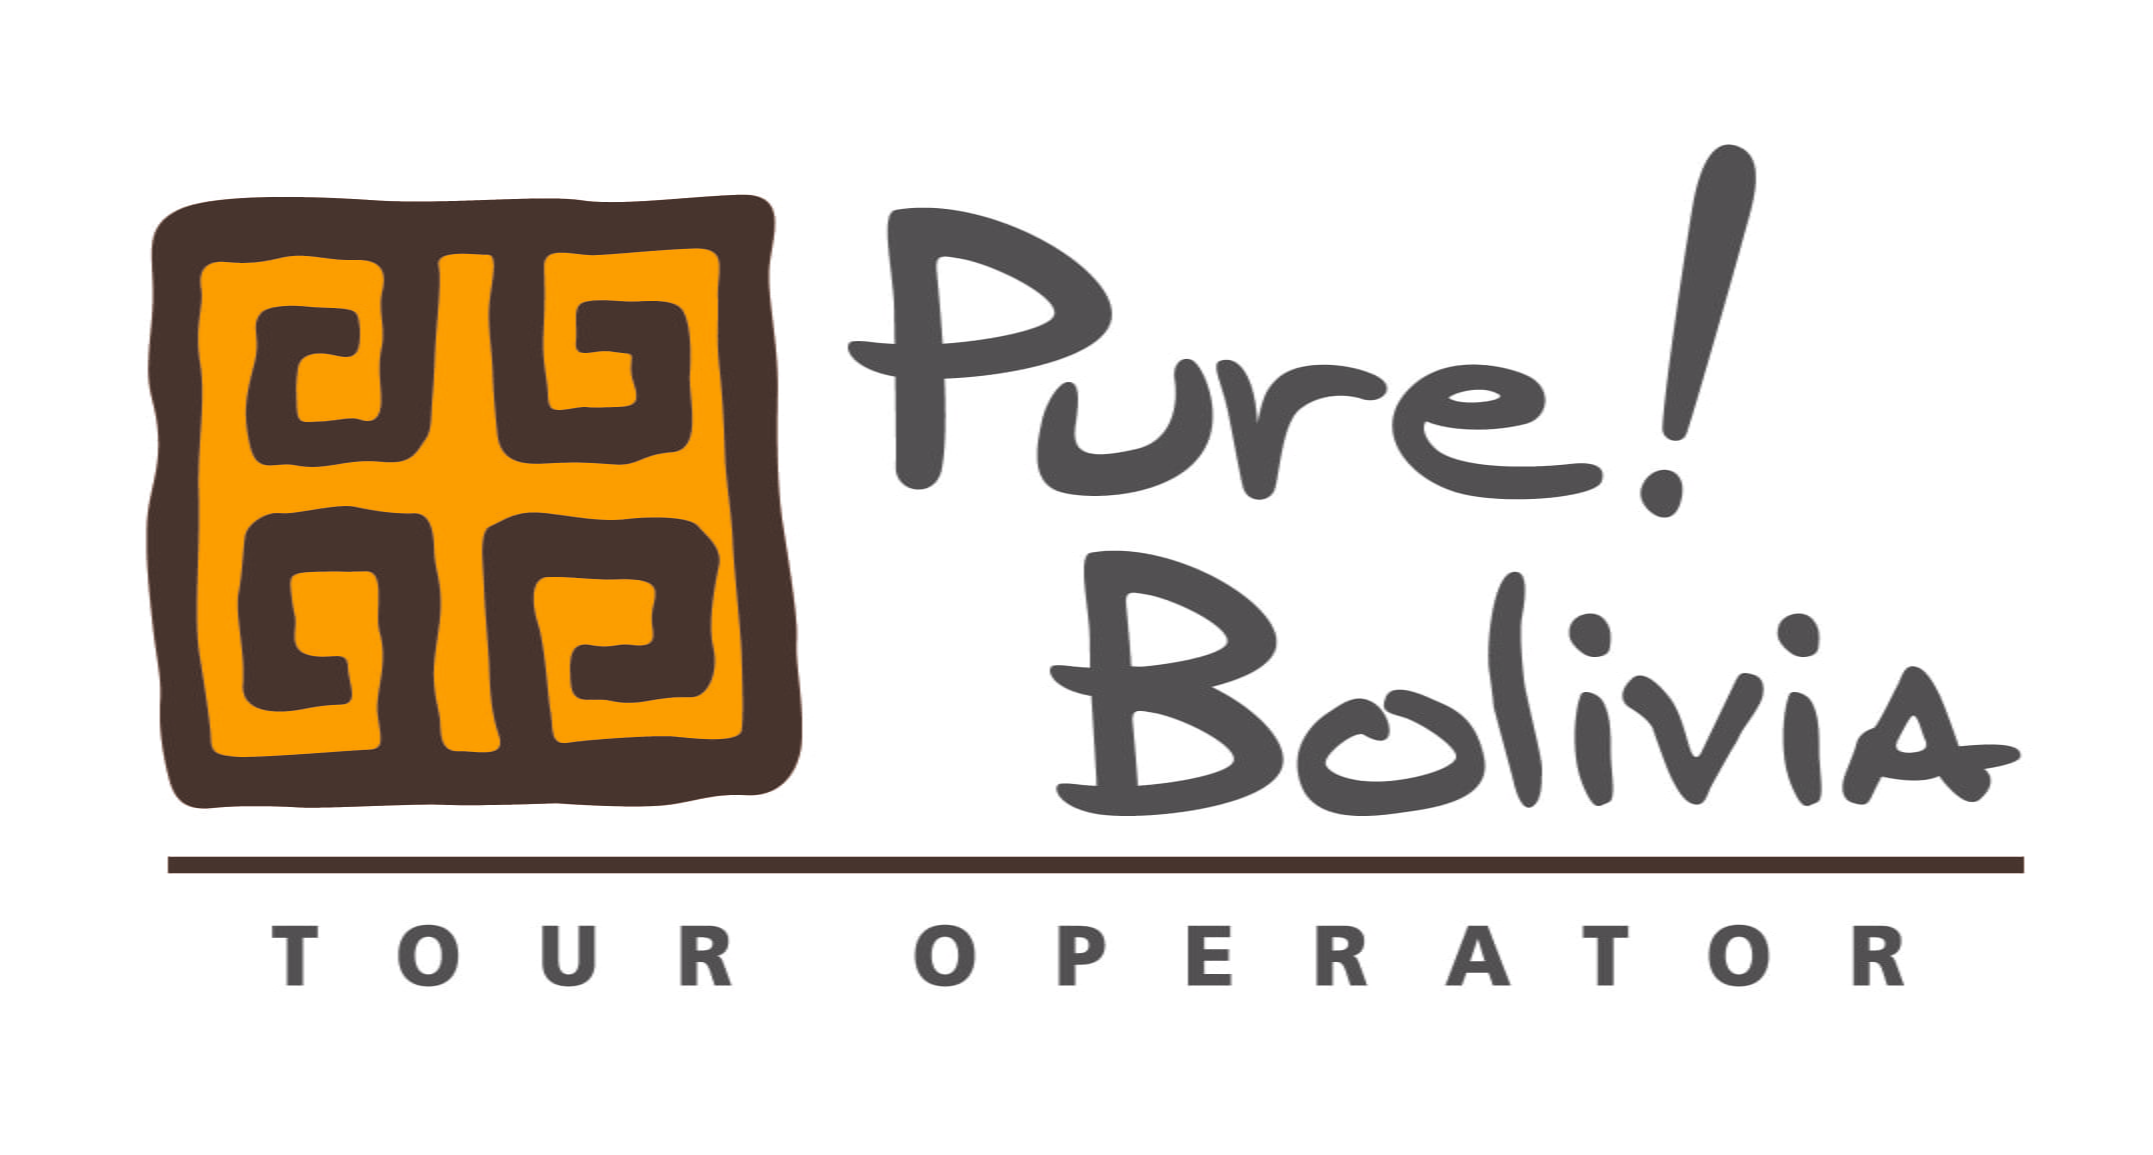 PureBolivia_Logo.jpg